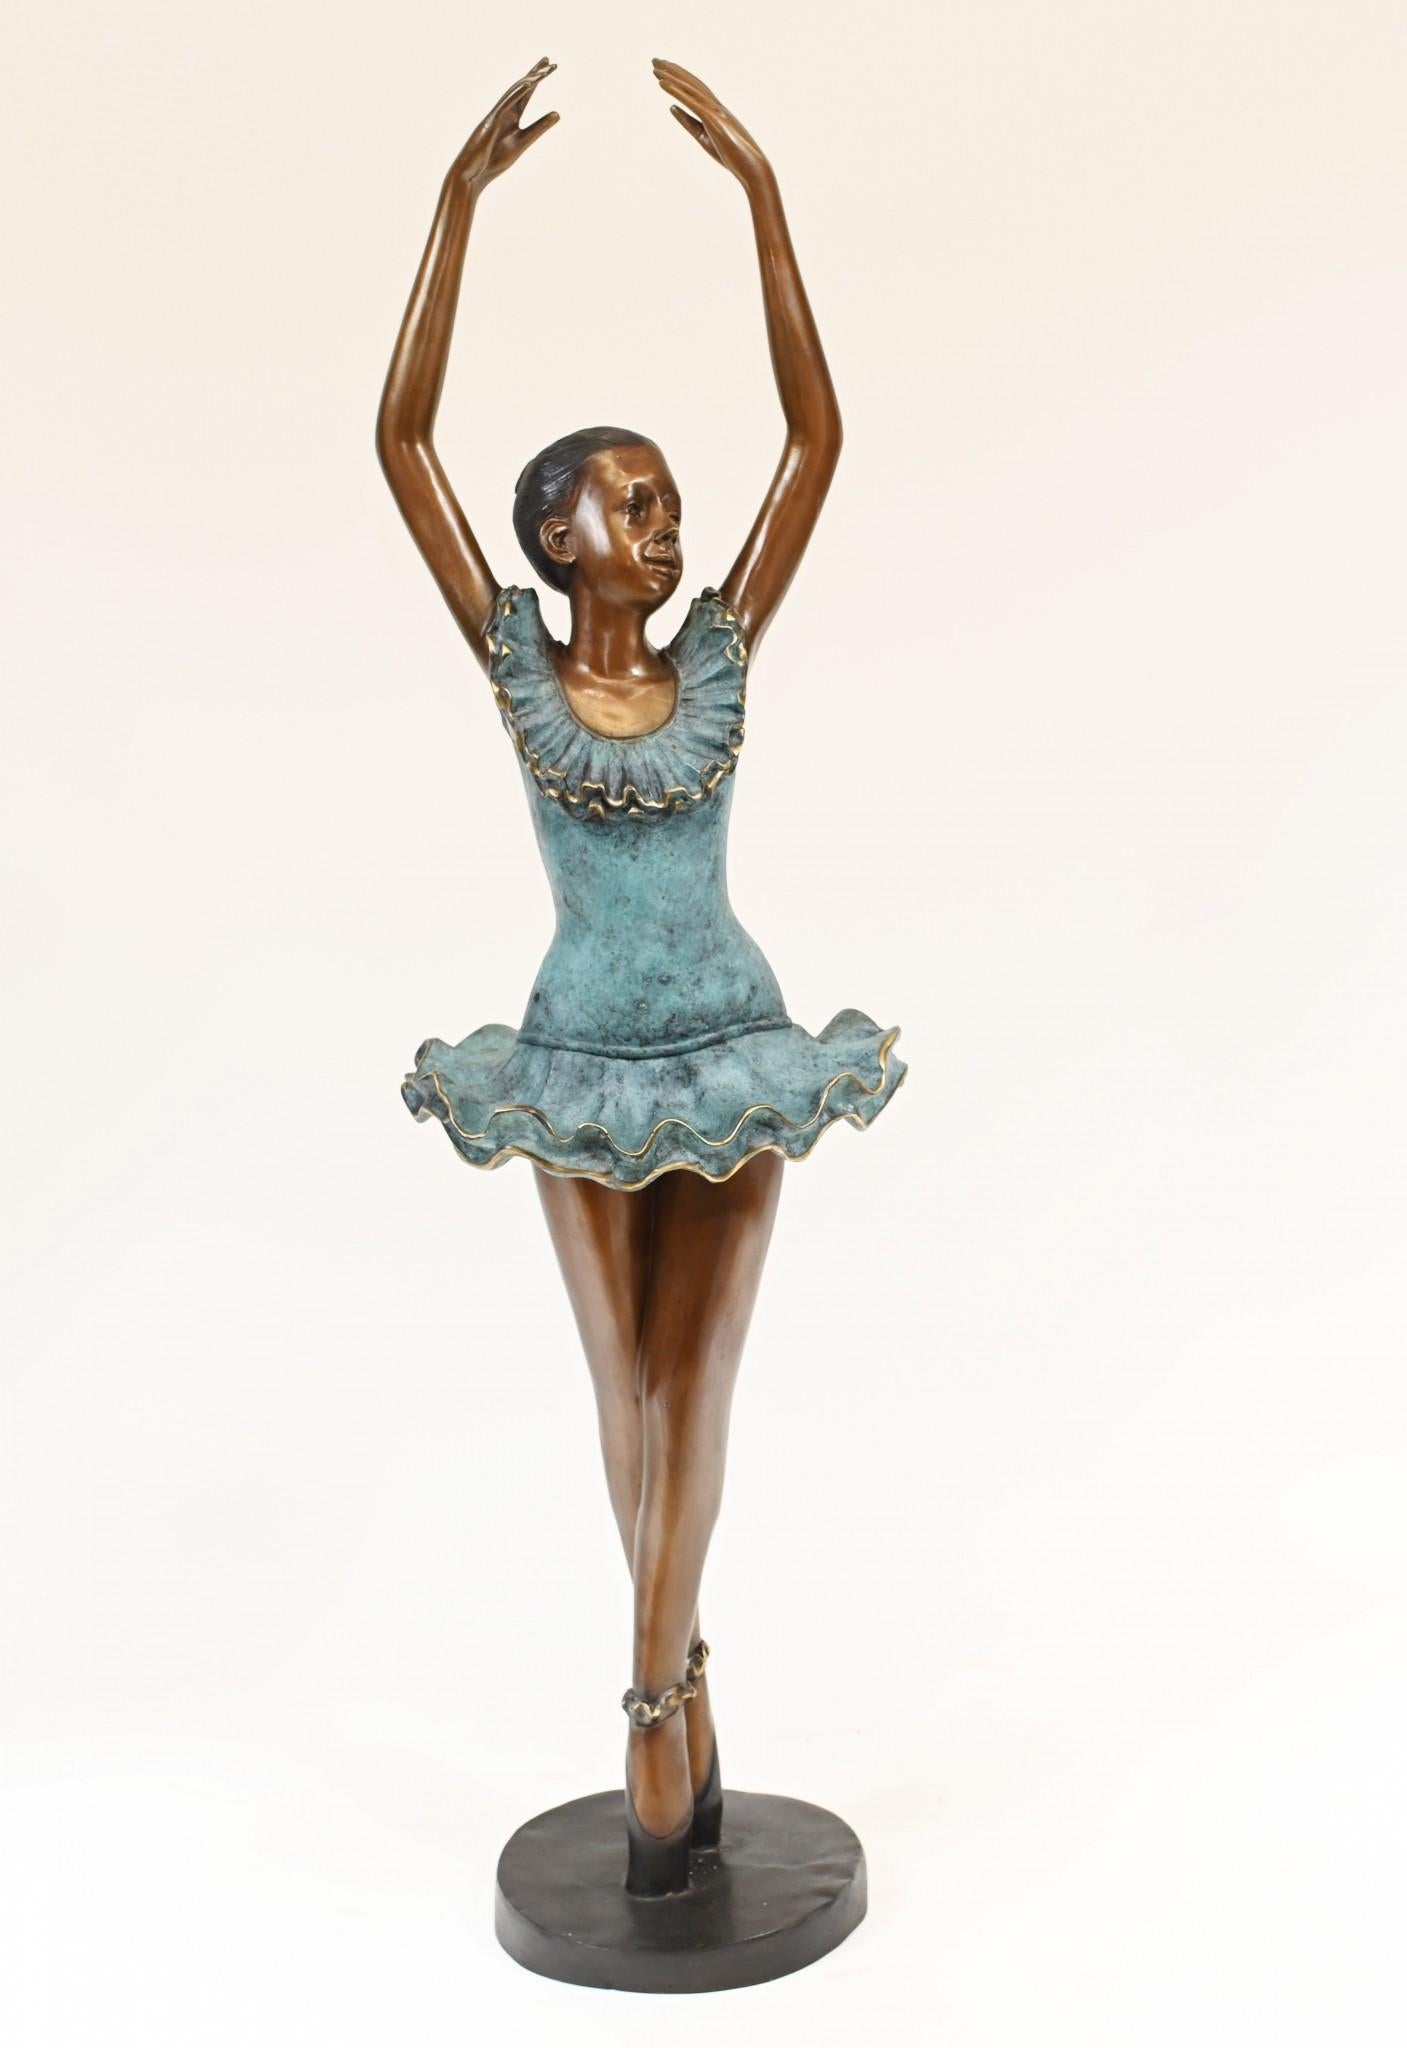 Niedliche Bronzestatue einer jungen Ballerina im Pirouettenmodus
Ein so fröhliches Stück, das jedes Interieur aufpeppt
Gekauft bei einem Händler am Marche Biron auf dem Pariser Antiquitätenmarkt
Einige unserer Artikel sind in der Lagerung, so